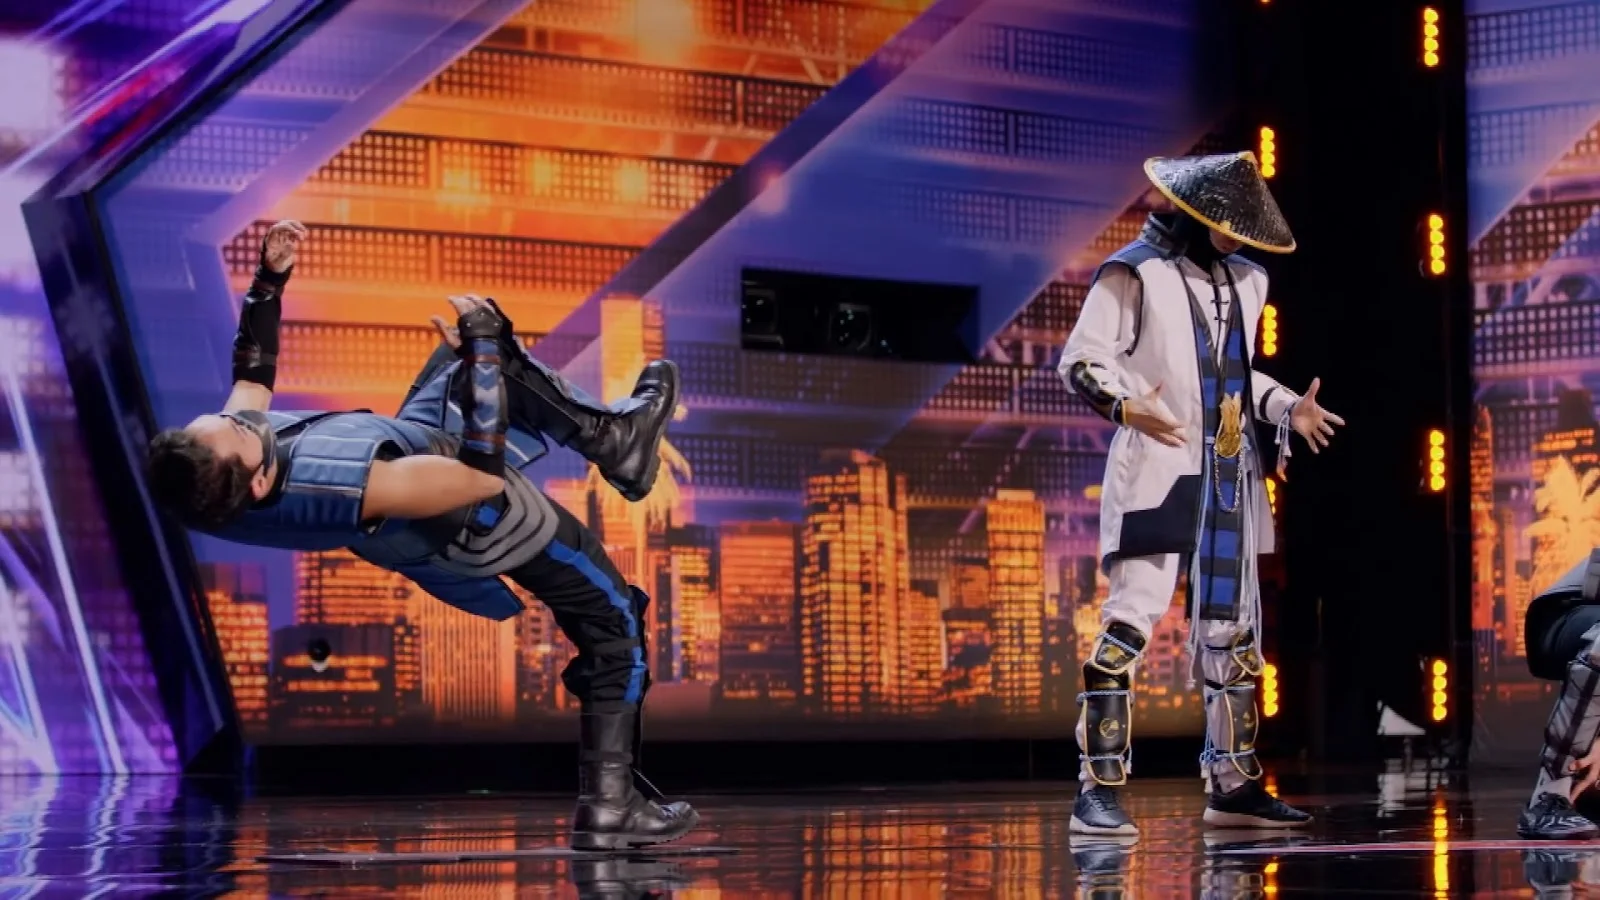 На Americaʼs Got Talent пришли киргизы и исполнили танец в стиле Mortal Kombat. Фаталити! - фото 1